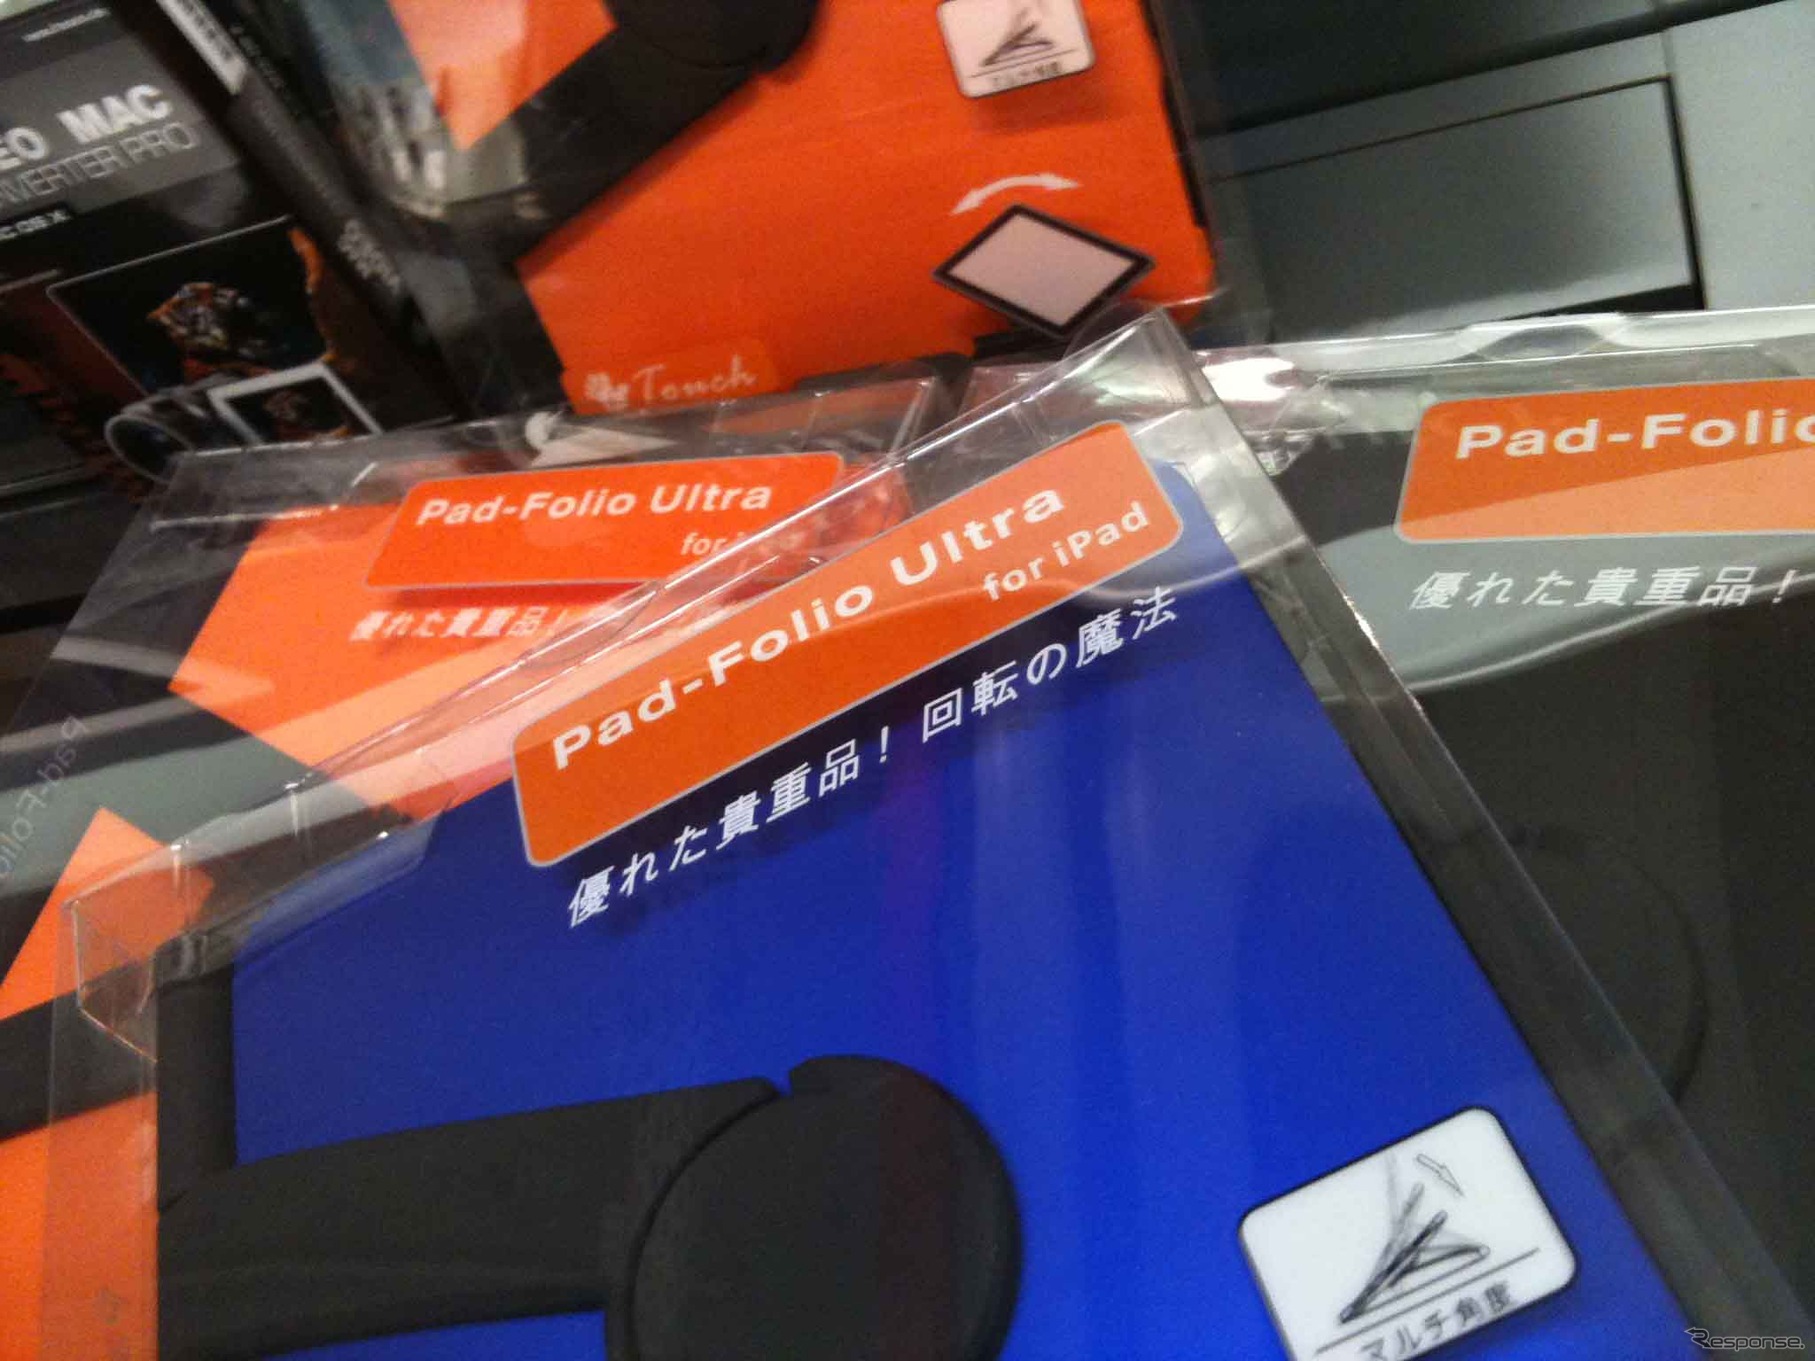 サードパーティー製のiPad用ホルダー。形状よりも記された日本語が気になる